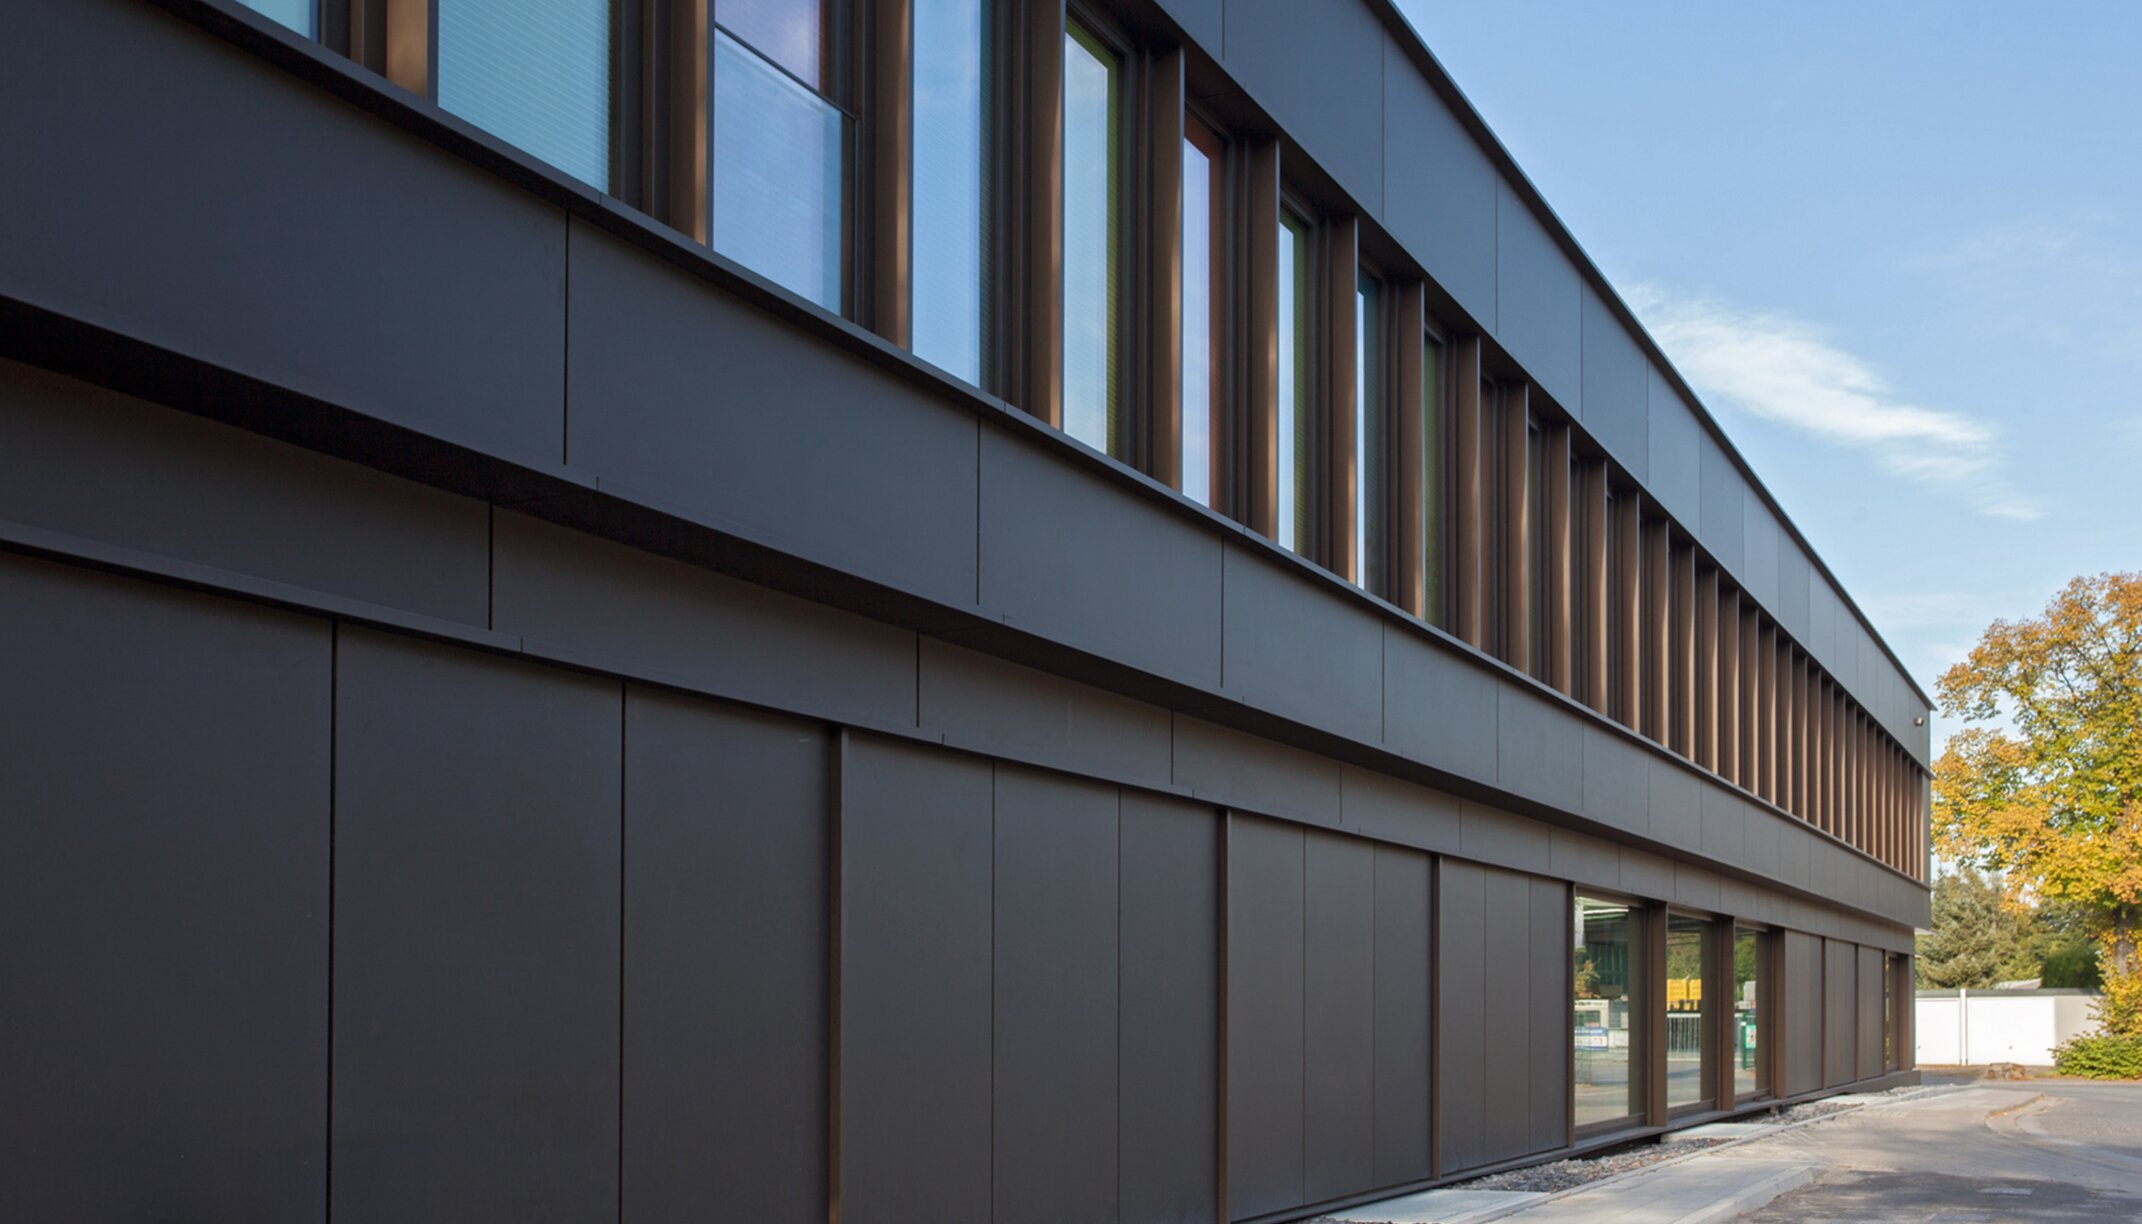 "Gesundheitshaus Kettwig"; aluminium facade solution by POHL  | © DEIMEL + WITTMAR Architekturfotografie